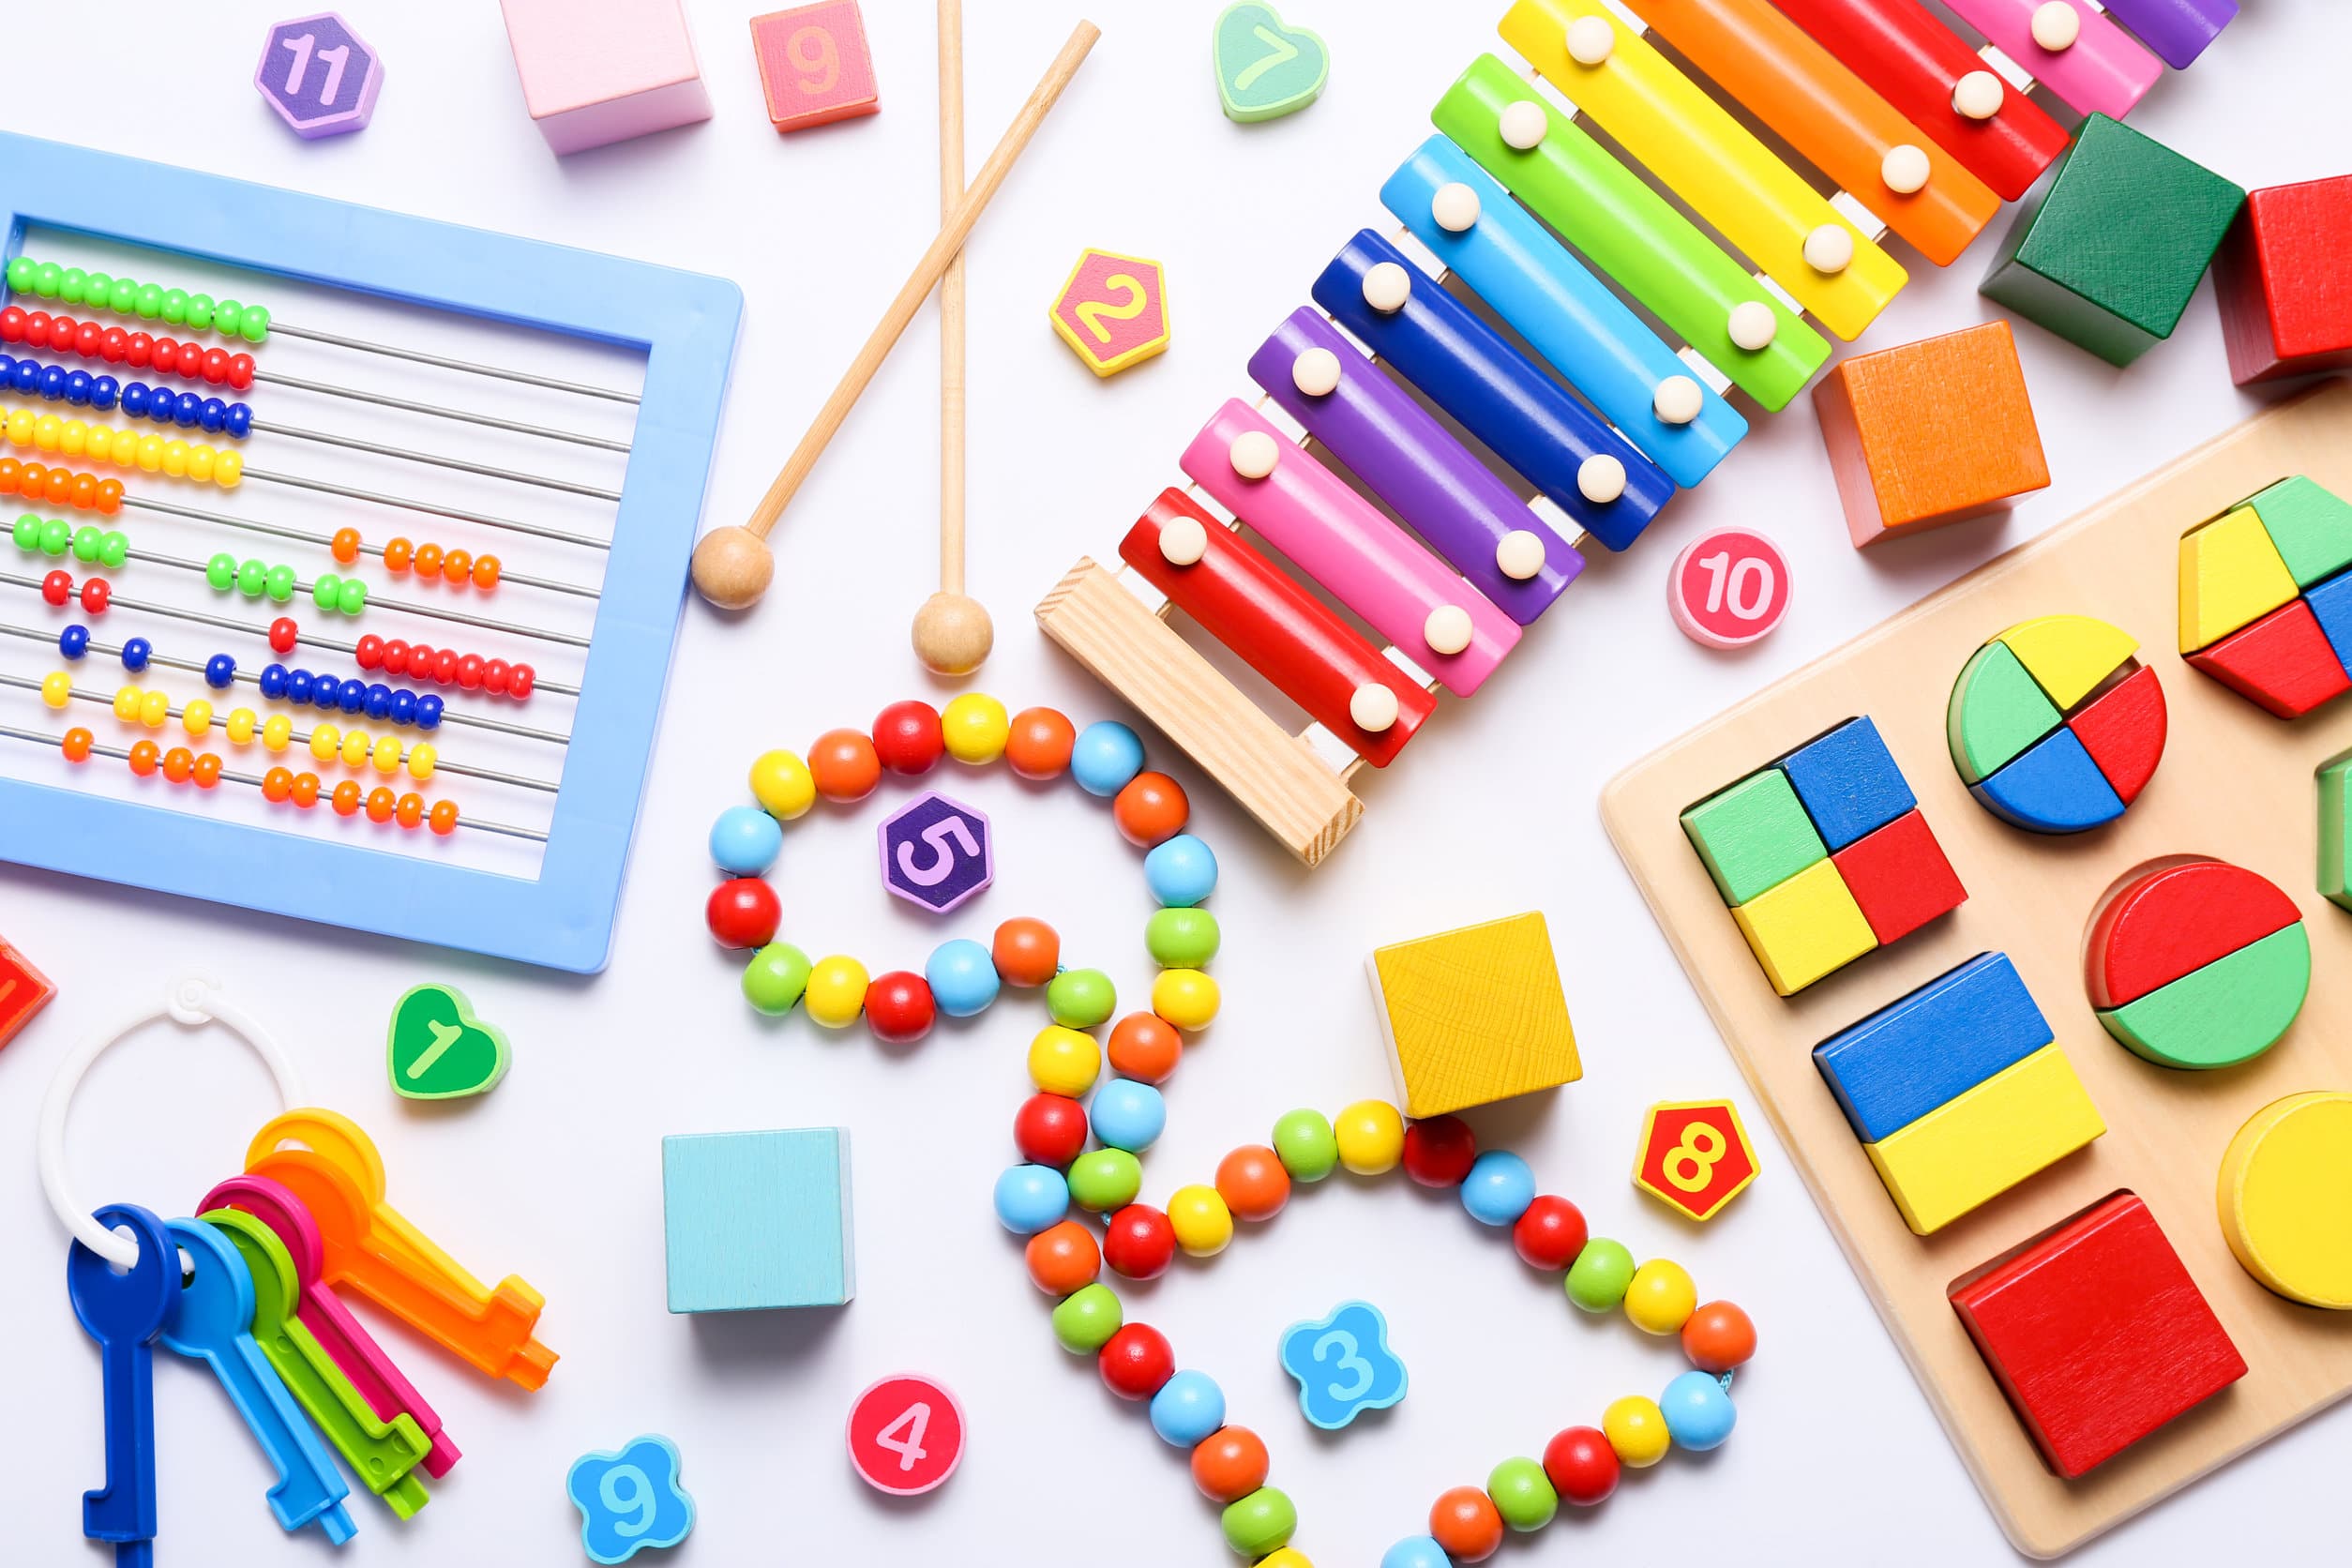 Tientallen kleurrijke educatieve speeltjes voor kinderen van bovenaf gezien